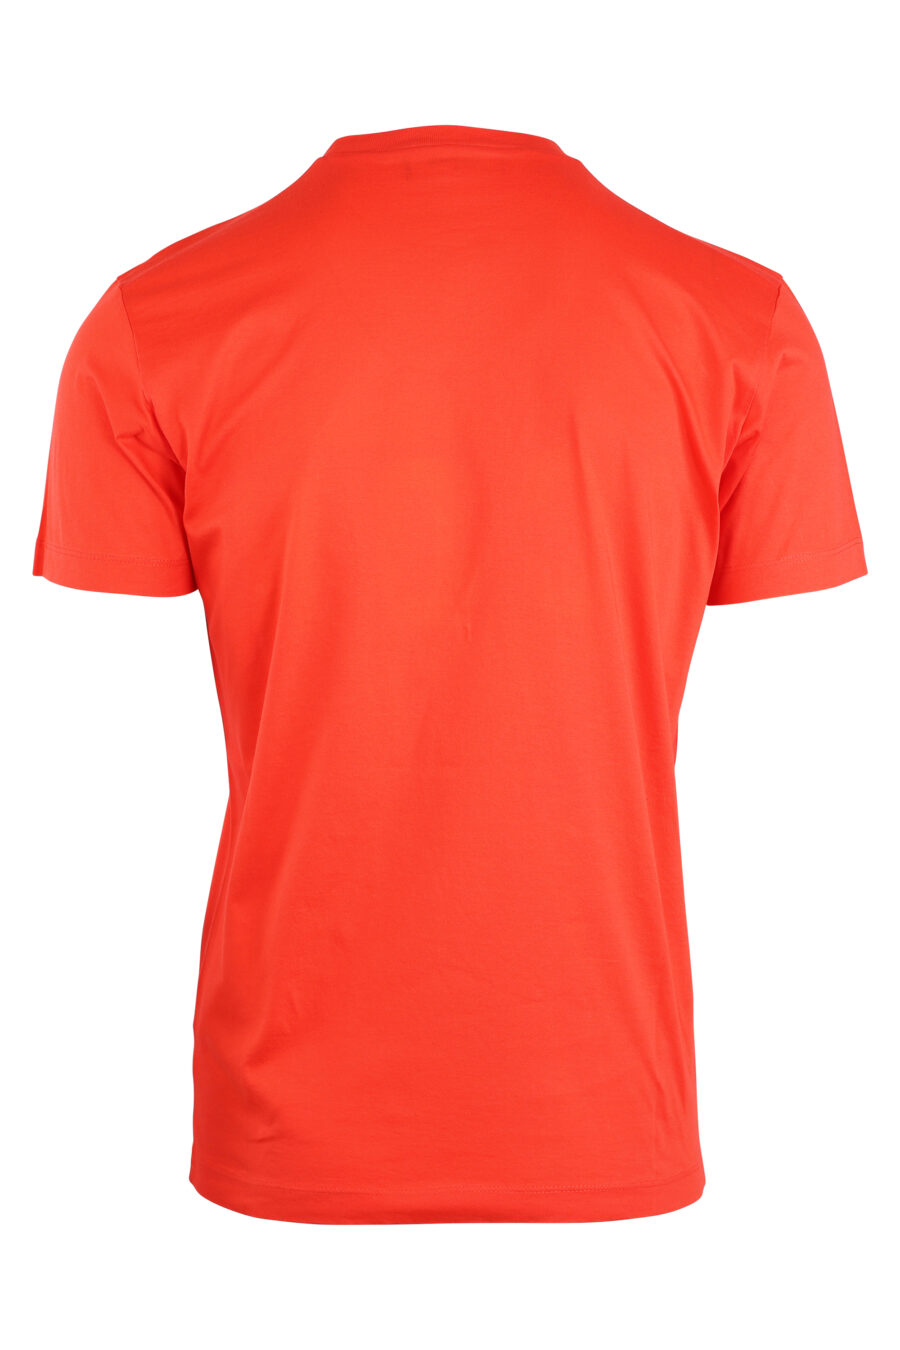 T-shirt orange avec double logo "icon" - IMG 8929